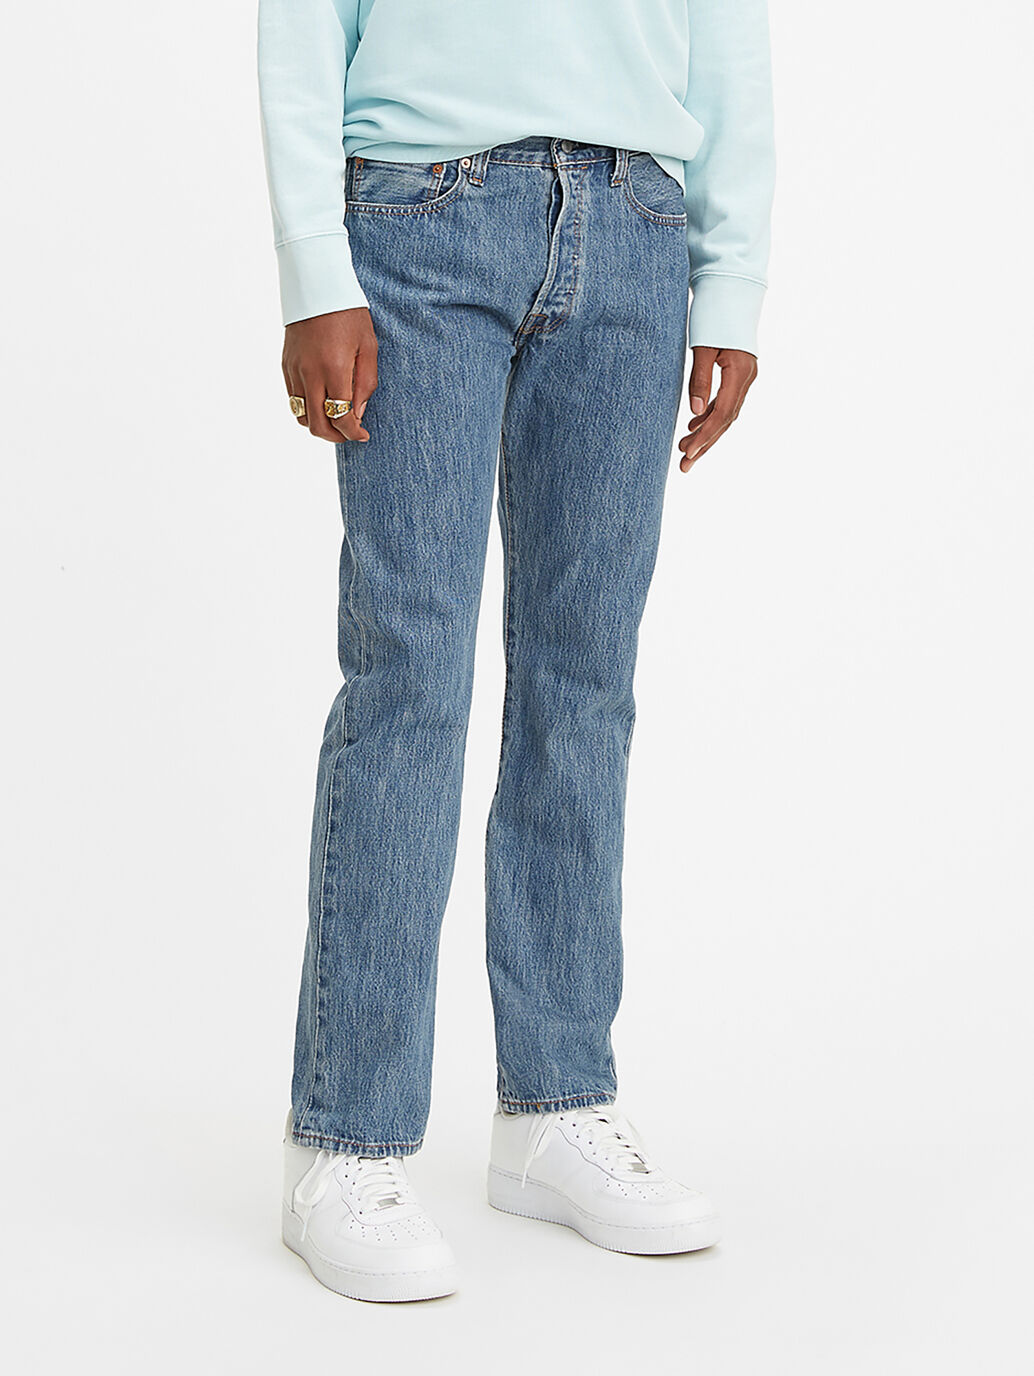 buy levis 501 jeans